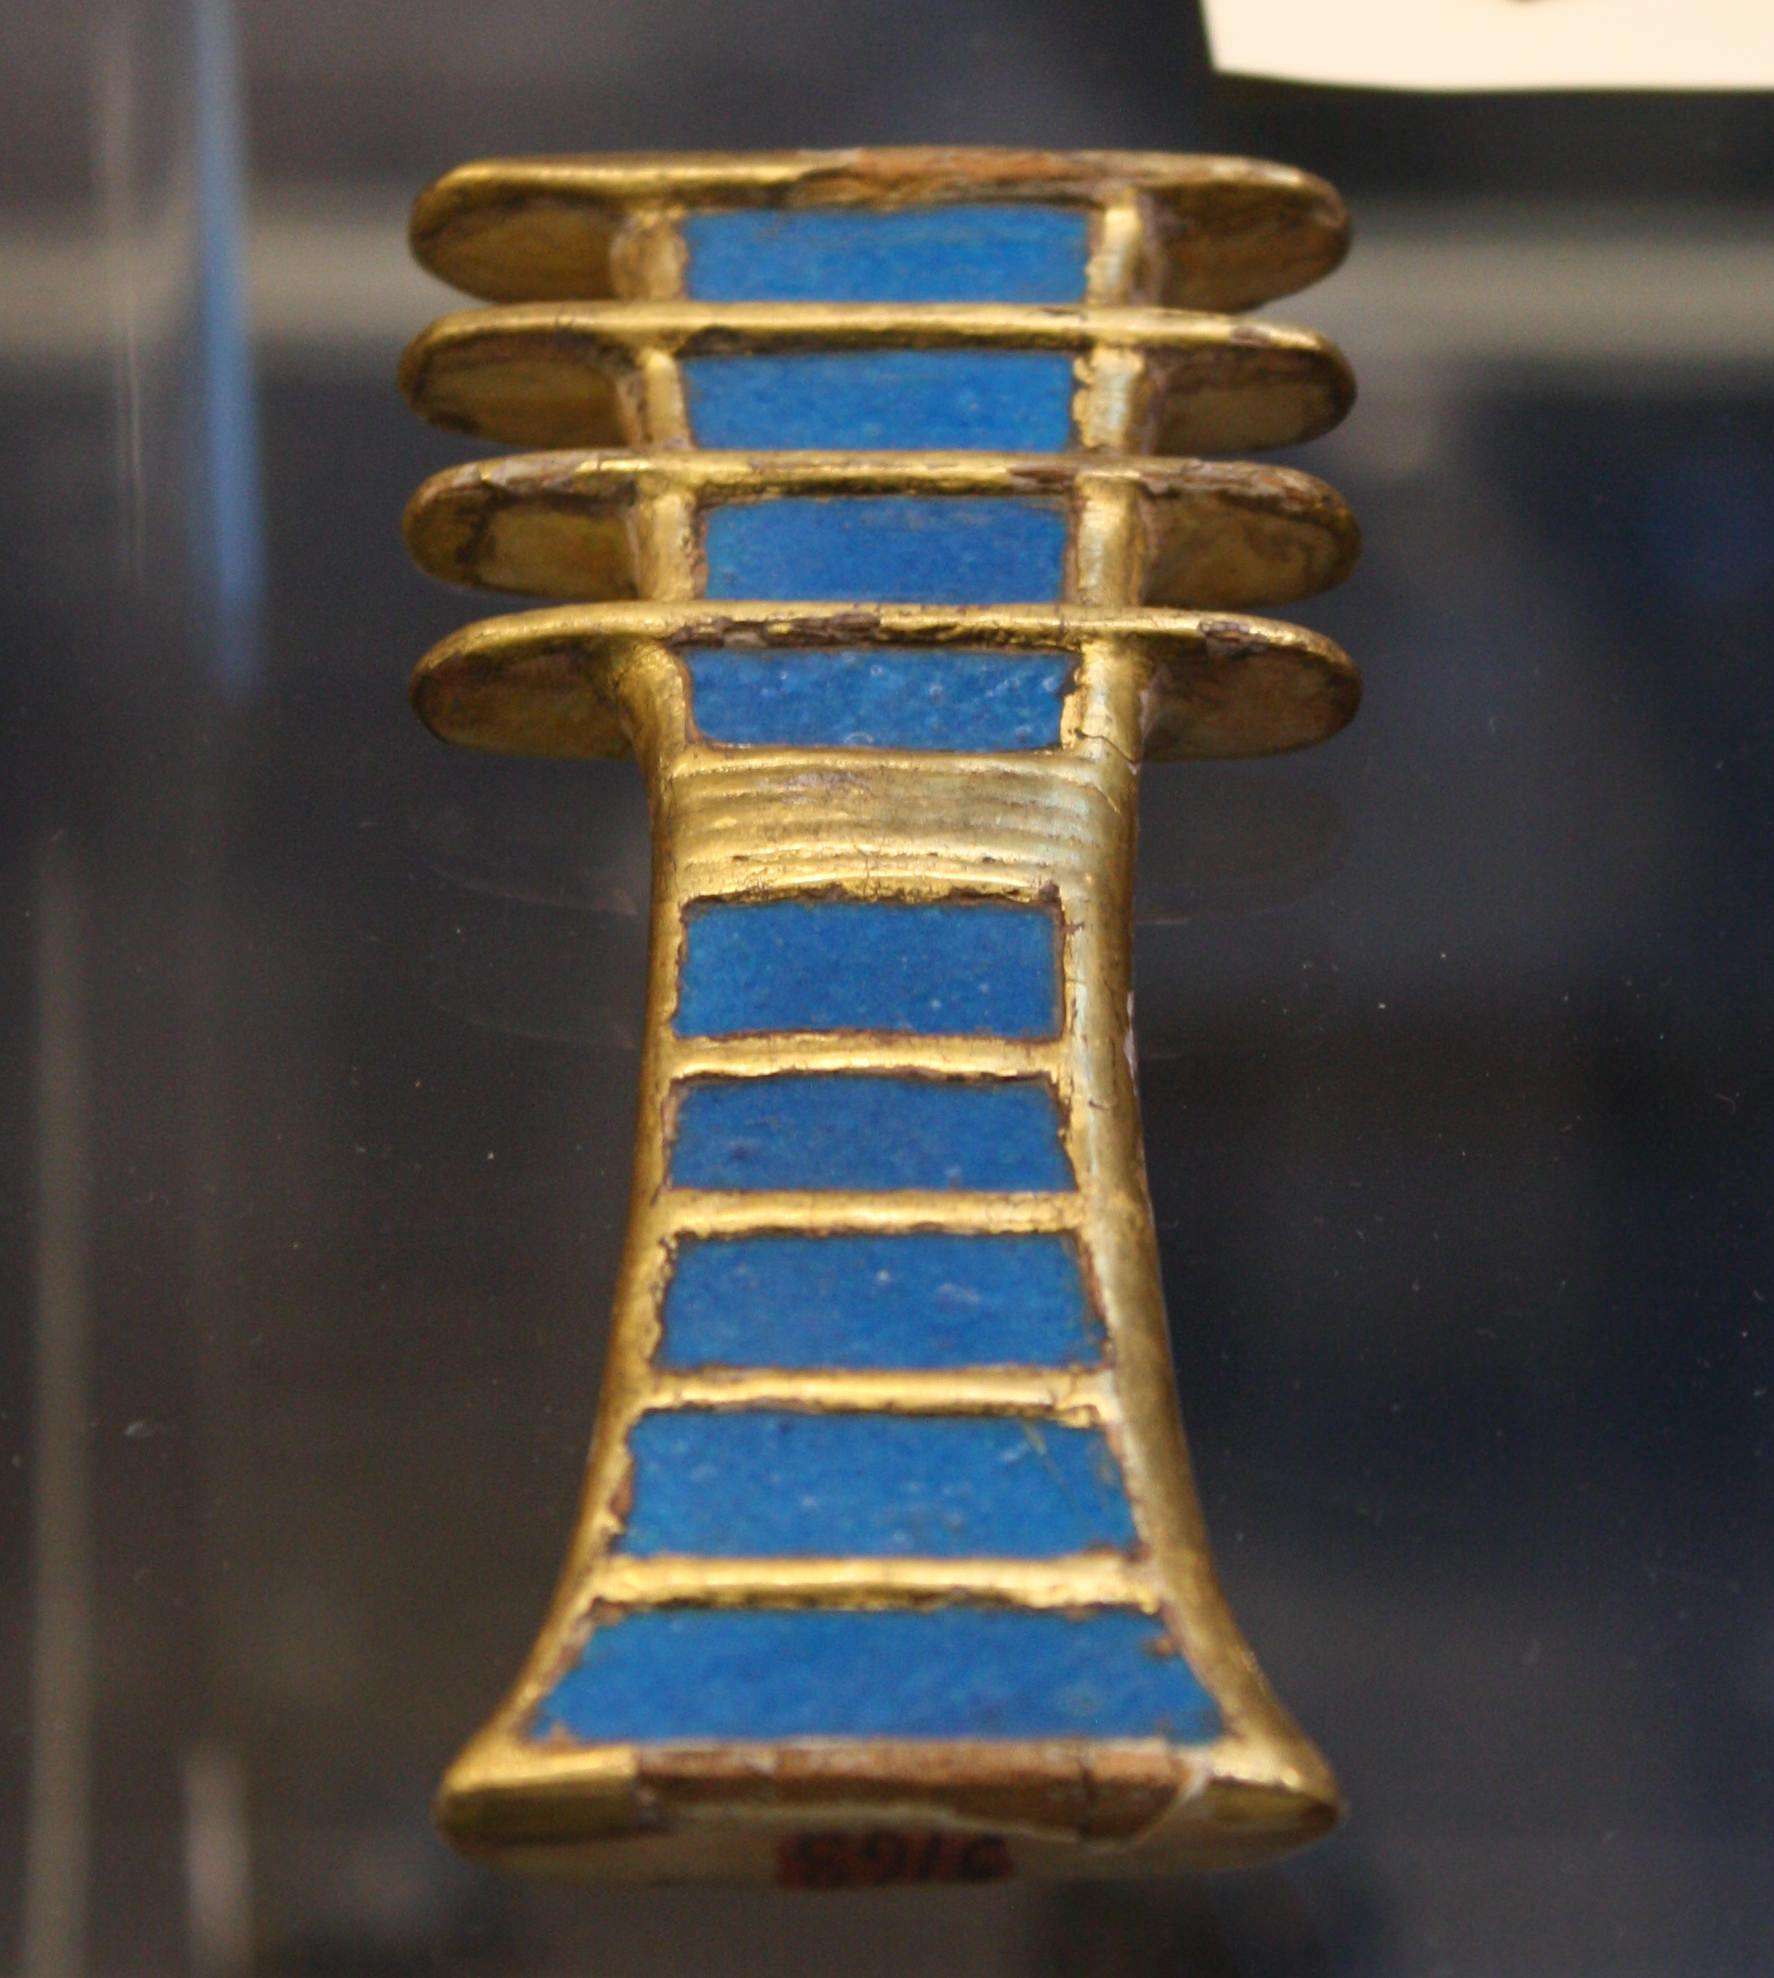 ไม้ปิดทองและไฟ djed amulet (สัญลักษณ์แห่งความมั่นคง) จากหลุมฝังศพของ Queen Nefertari ราชวงศ์ XIX 1279-1213 ก่อนคริสตศักราช (พิพิธภัณฑ์อียิปต์ ตูริน)